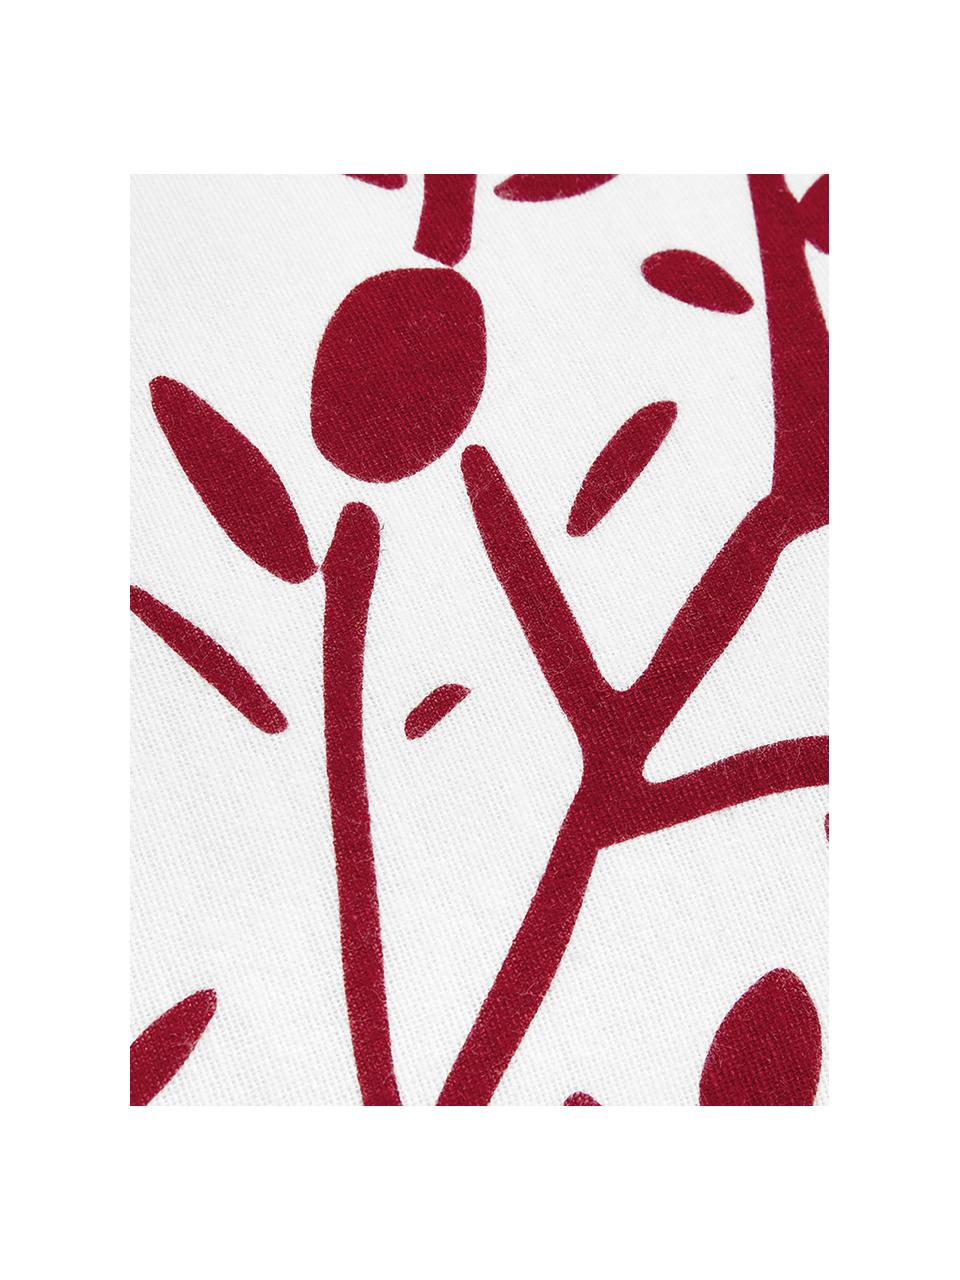 Pościel z flaneli Mistletoe, Biały, czerwony, 240 x 220 cm + 2 poduszki 80 x 80 cm